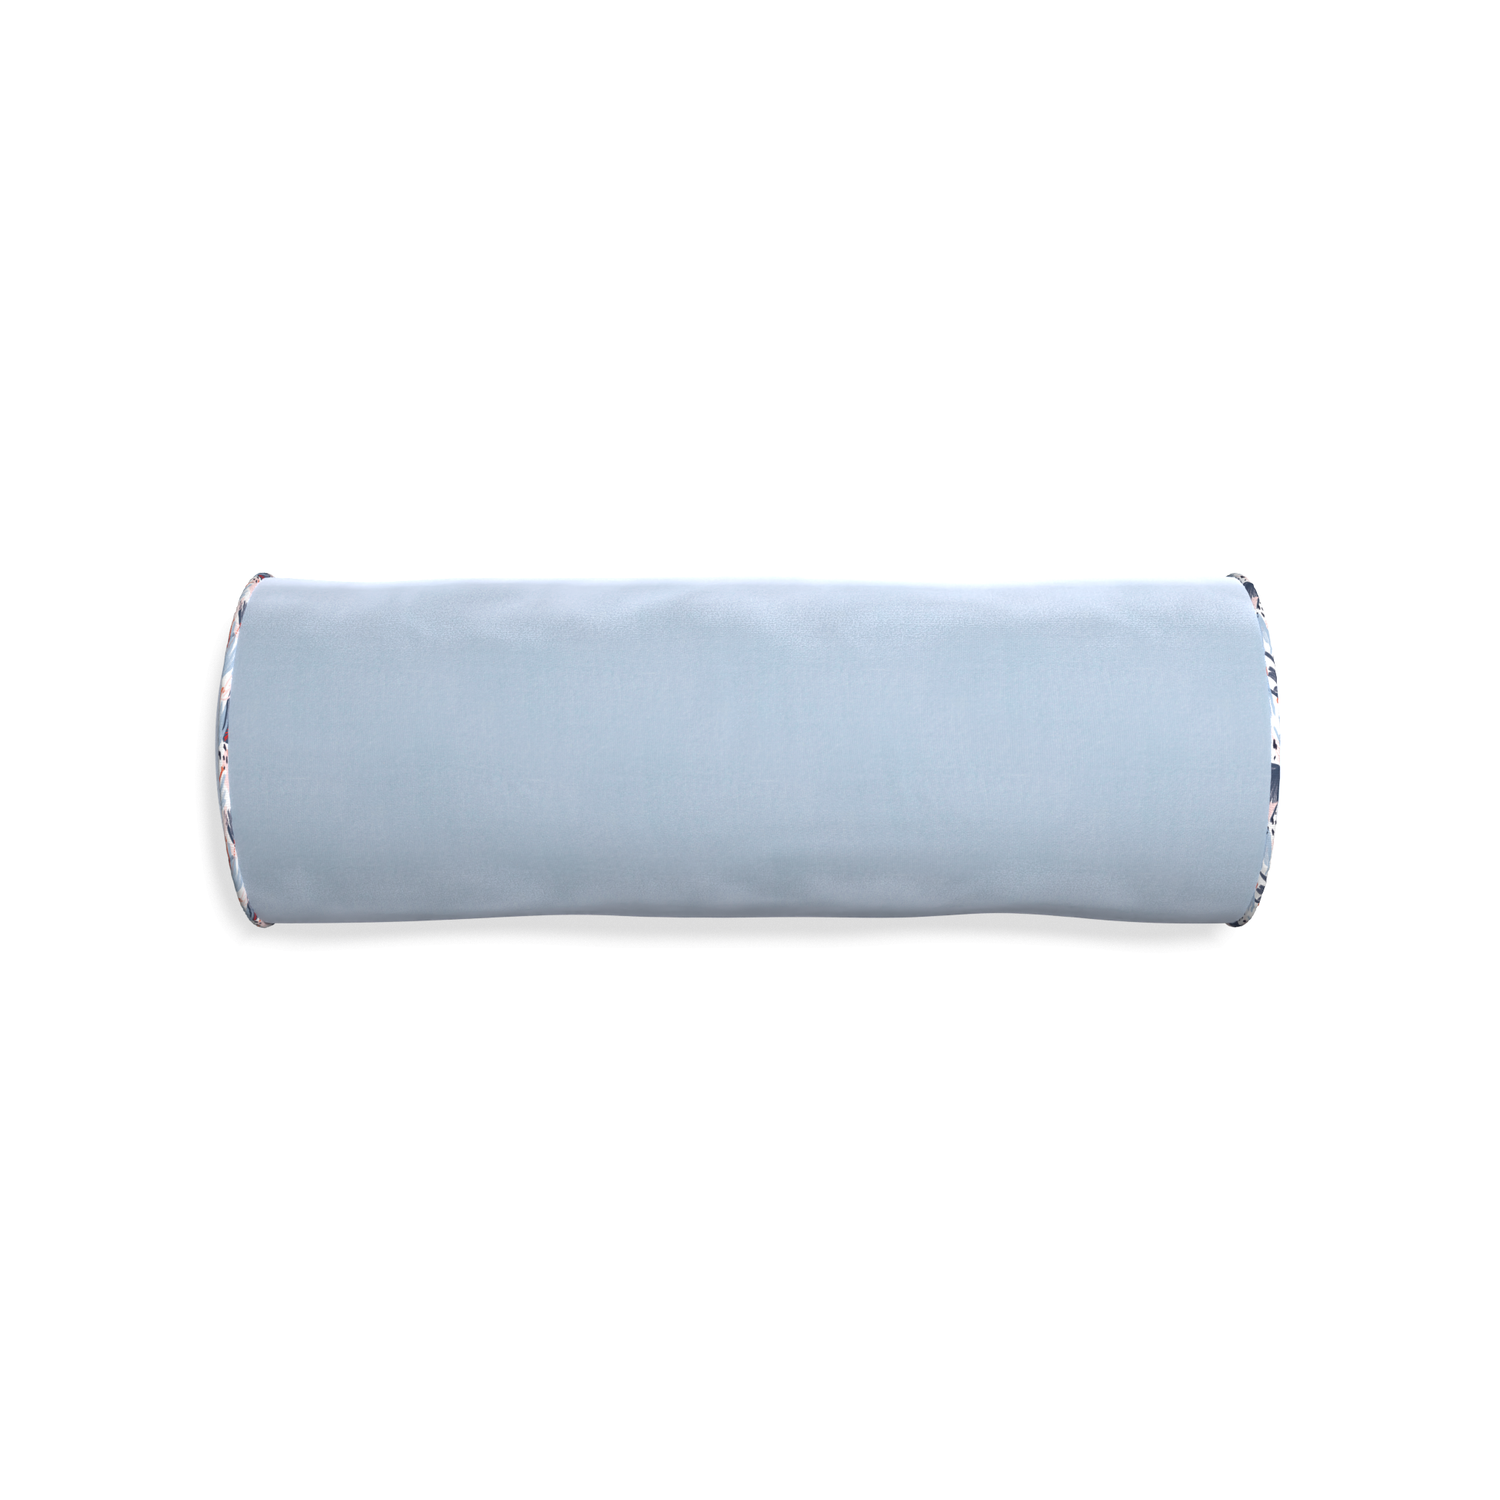 Bolster sky velvet custom pillow with e piping on white background